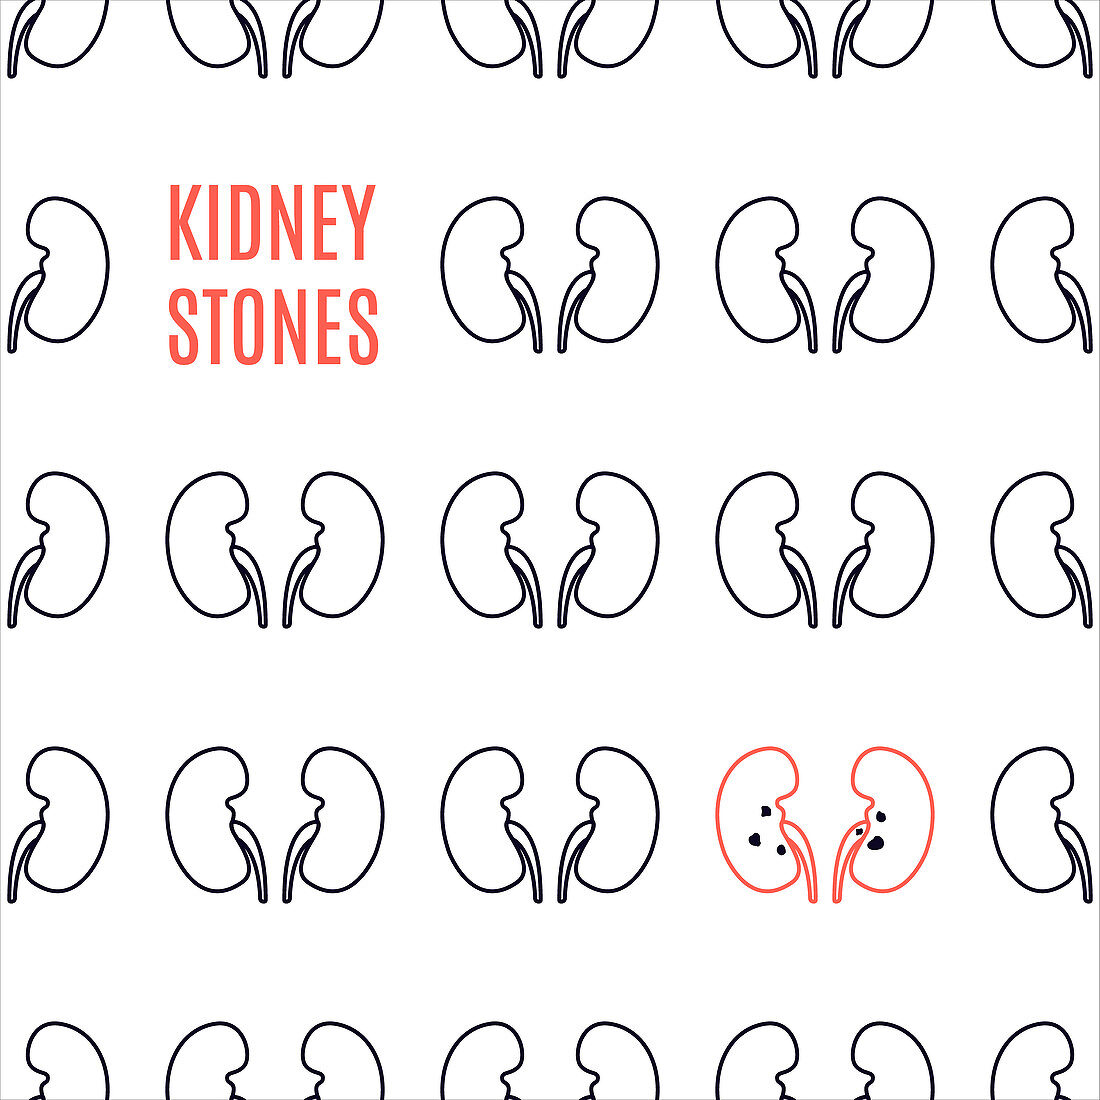 Kidney stone disease, illustration